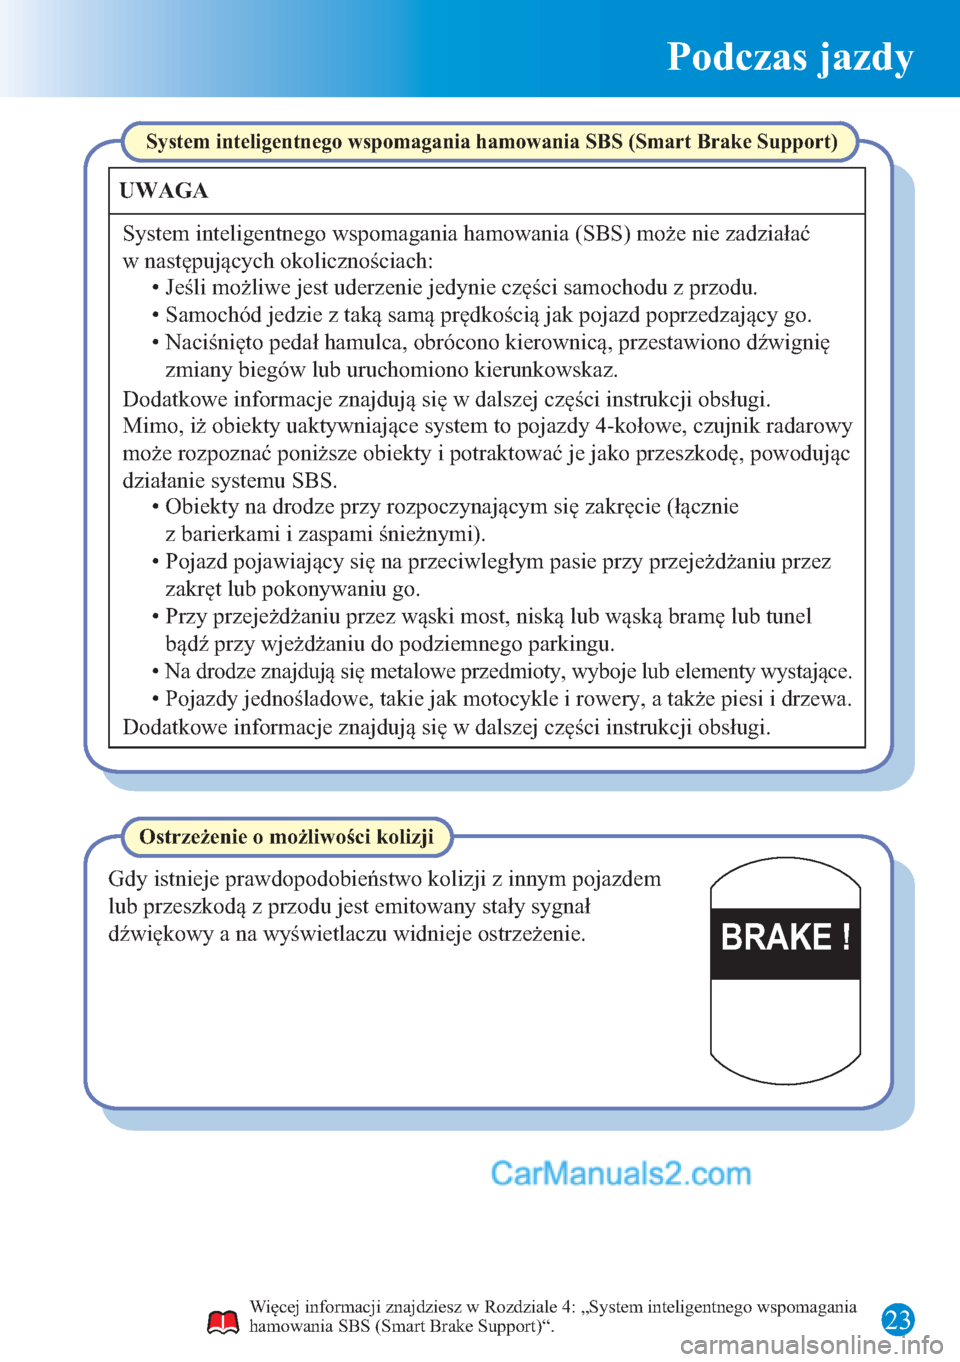 MAZDA MODEL CX-5 2015  Krótki Przewodnik (in Polish) Podczas jazdy
23
BRAKE !
Więcej informacji znajdziesz w Rozdziale 4: „System inteligentnego wspomagania 
hamowania SBS (Smart Brake Support)“.
System inteligentnego wspomagania hamowania SBS (Sma